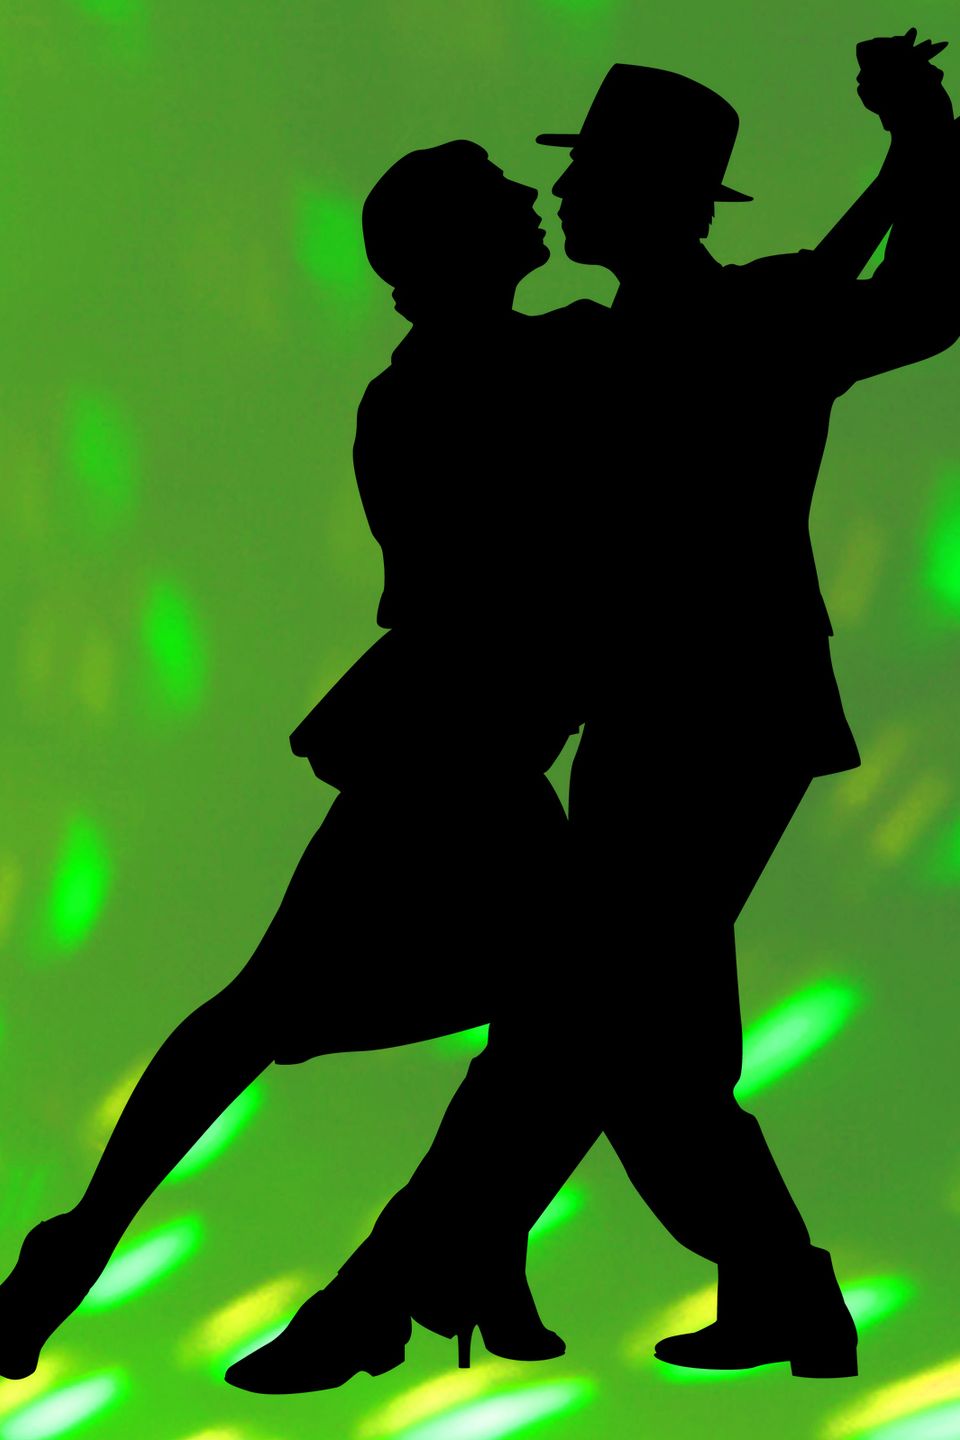 Dancer sillhouette green20170809 18053 pyp1nk